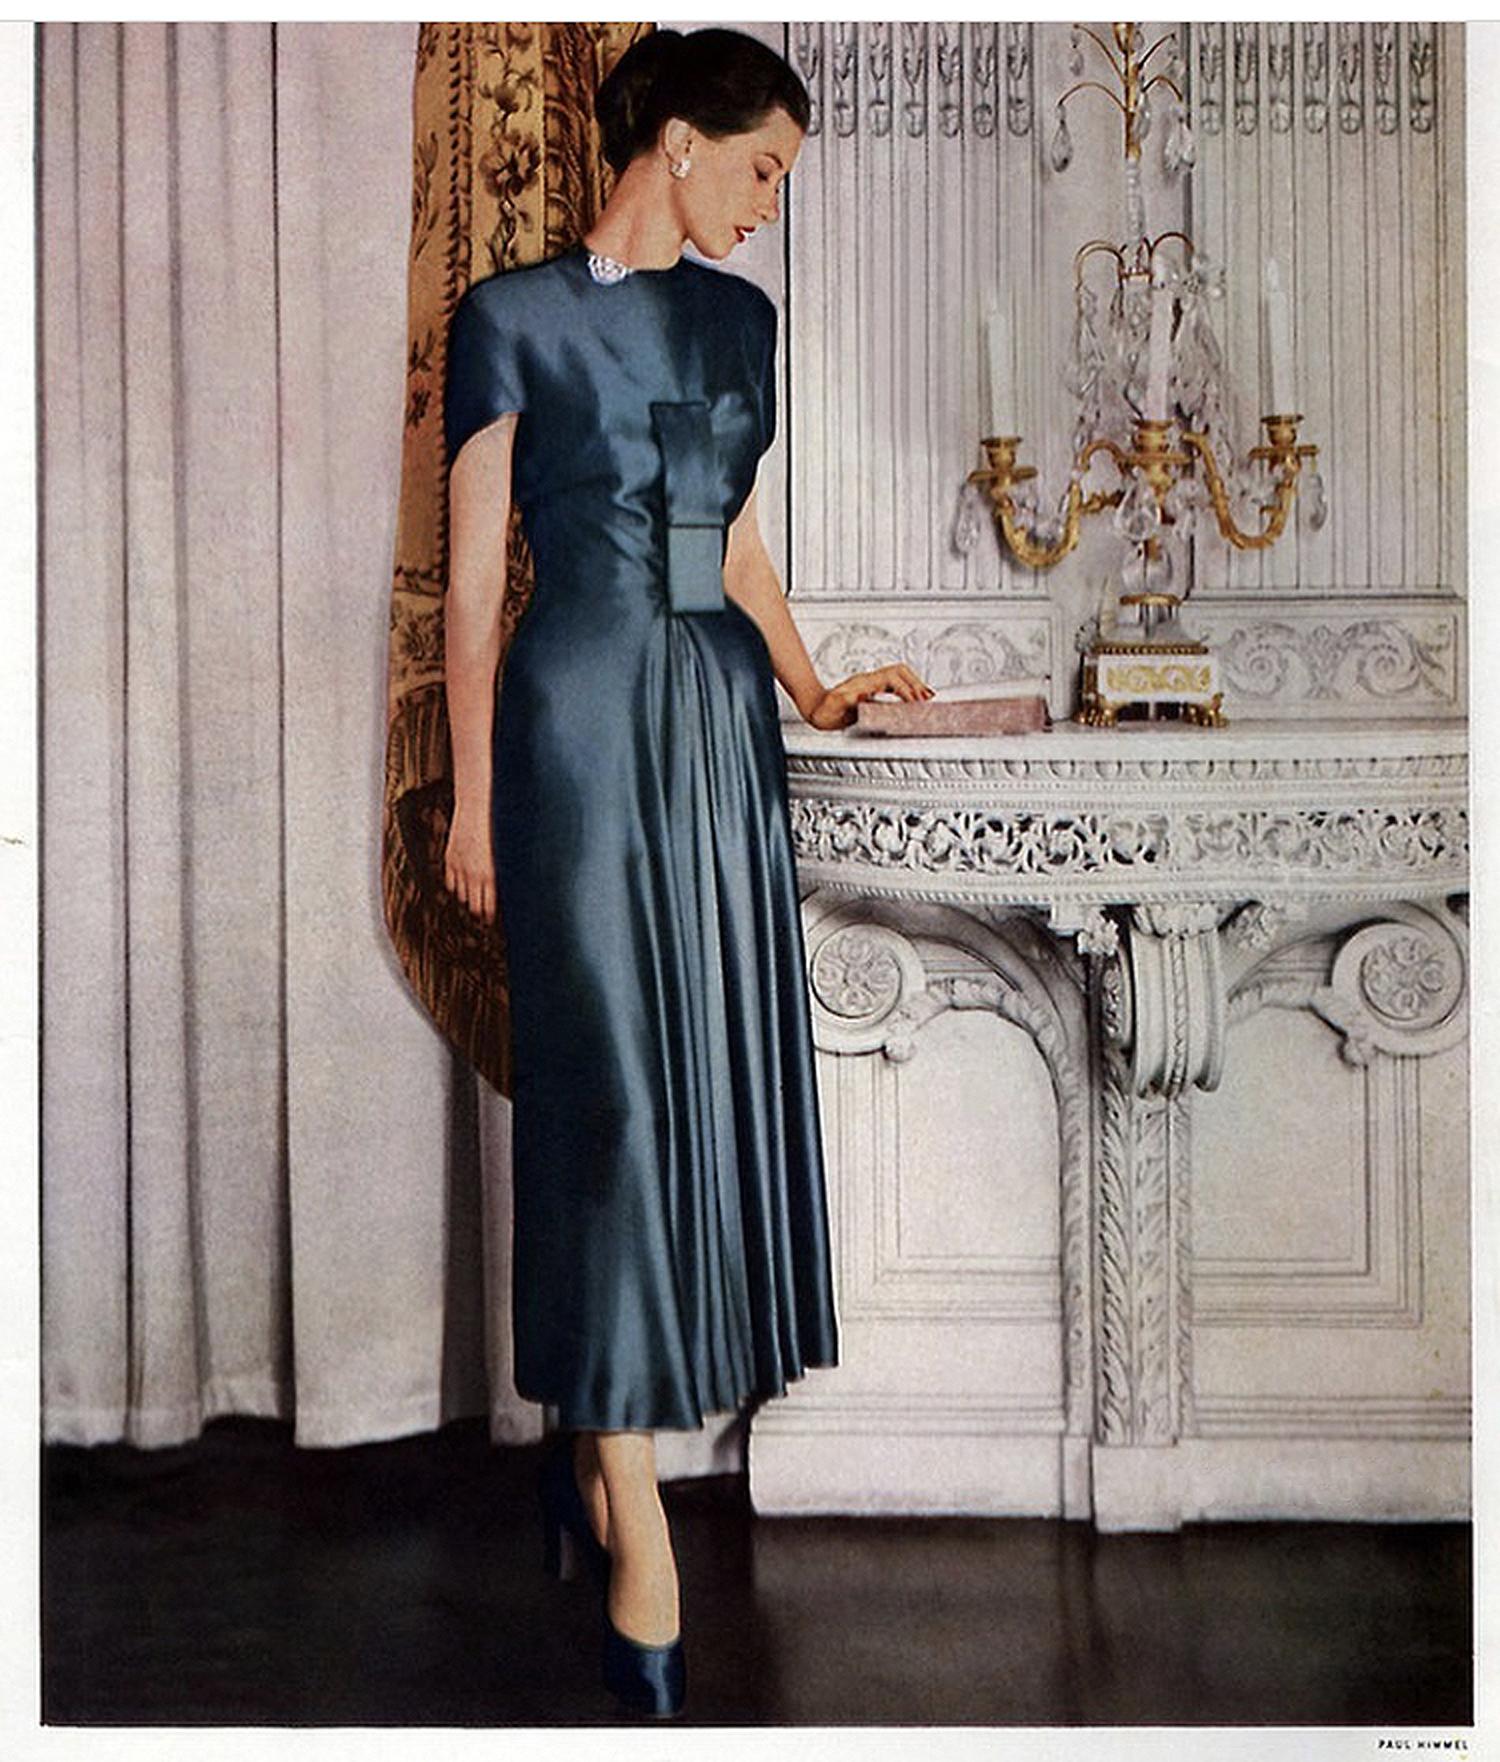 A stunning Herbert Sondheim cocktail dress dating back to 1948. The original editorial picture is an Enka Rayon ad, featuring the Herbert Sondheim garment, a 